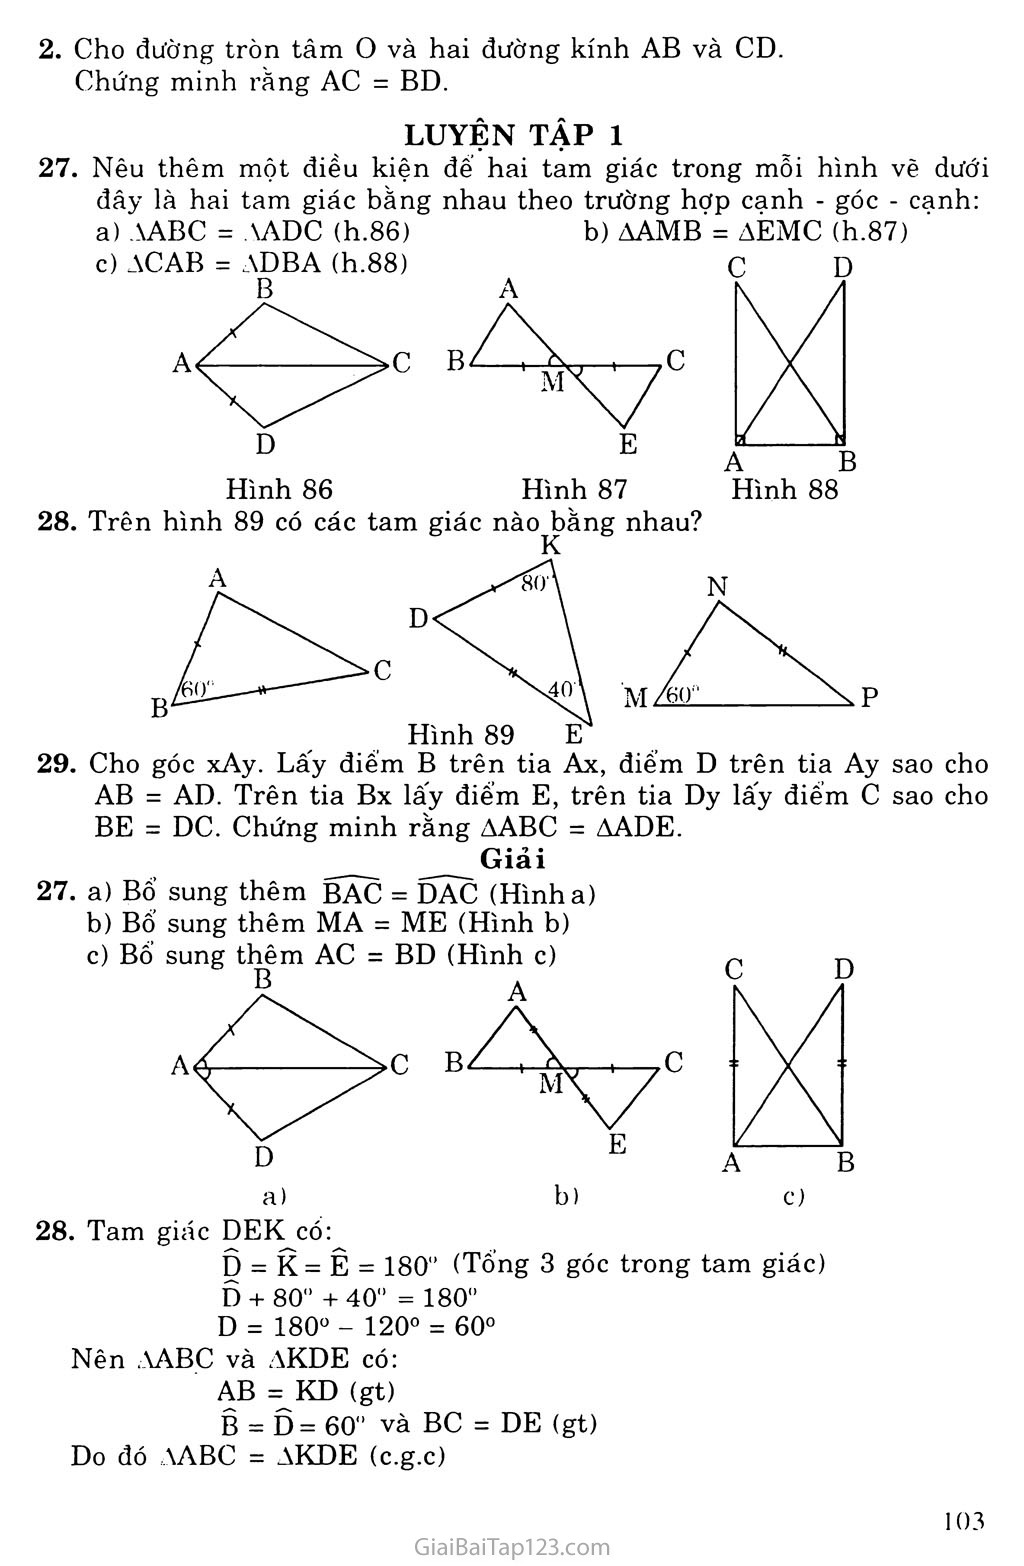 Bài 4. Trường hợp bằng nhau thứ hai của tam giác: cạnh - góc - canh (c. g. c) trang 4